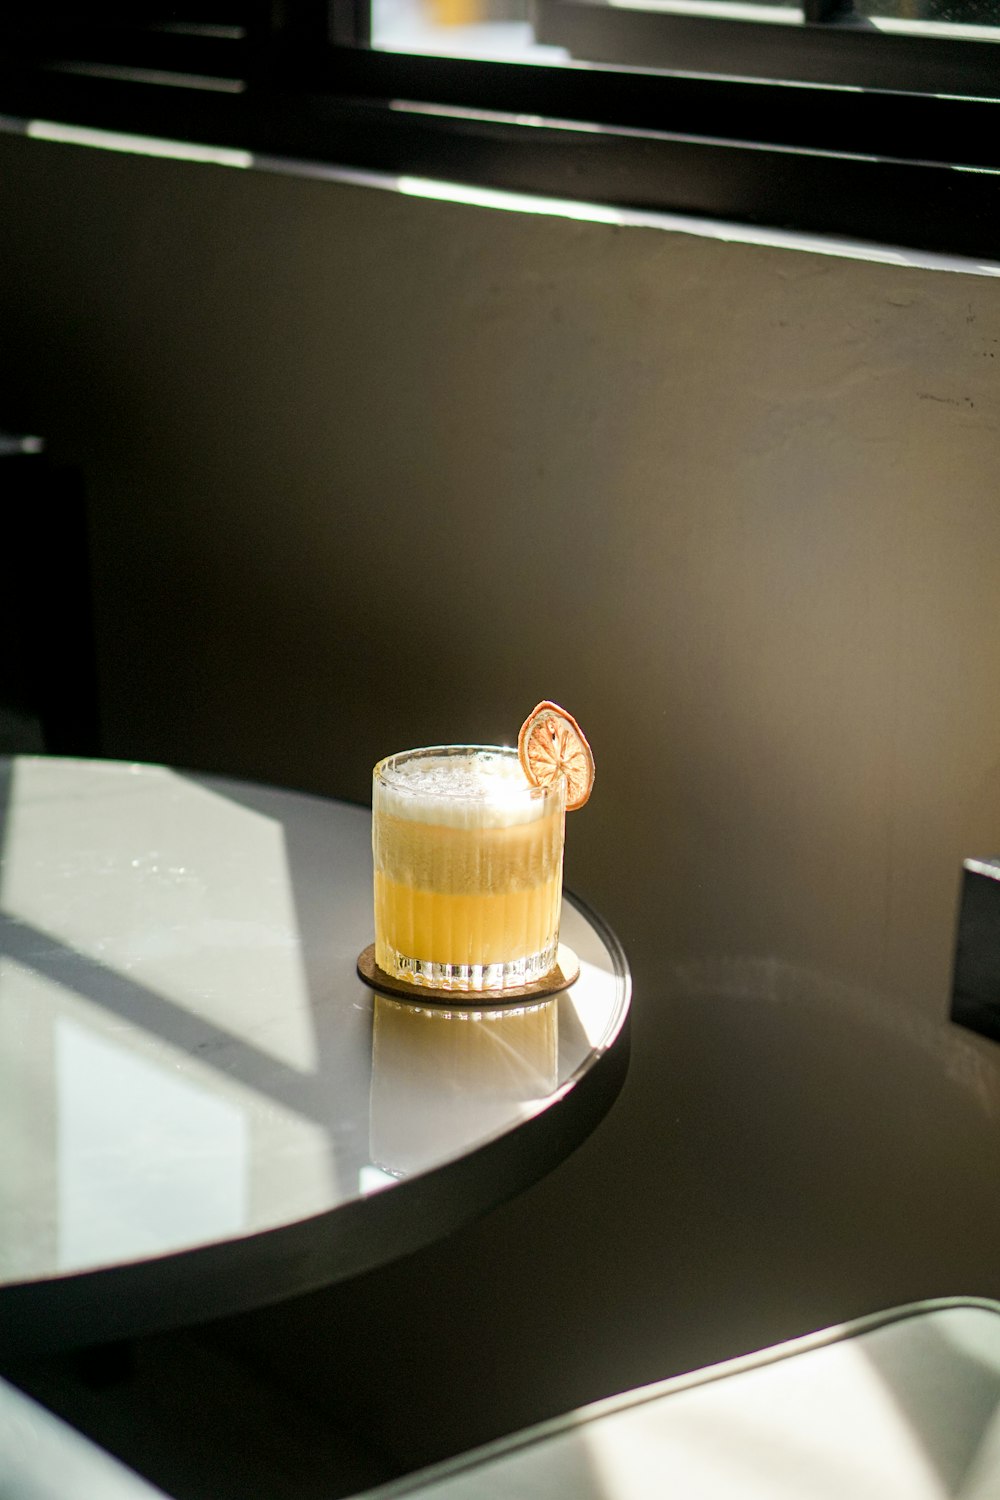 테이블 위에 놓인 오렌지 주스 한 잔